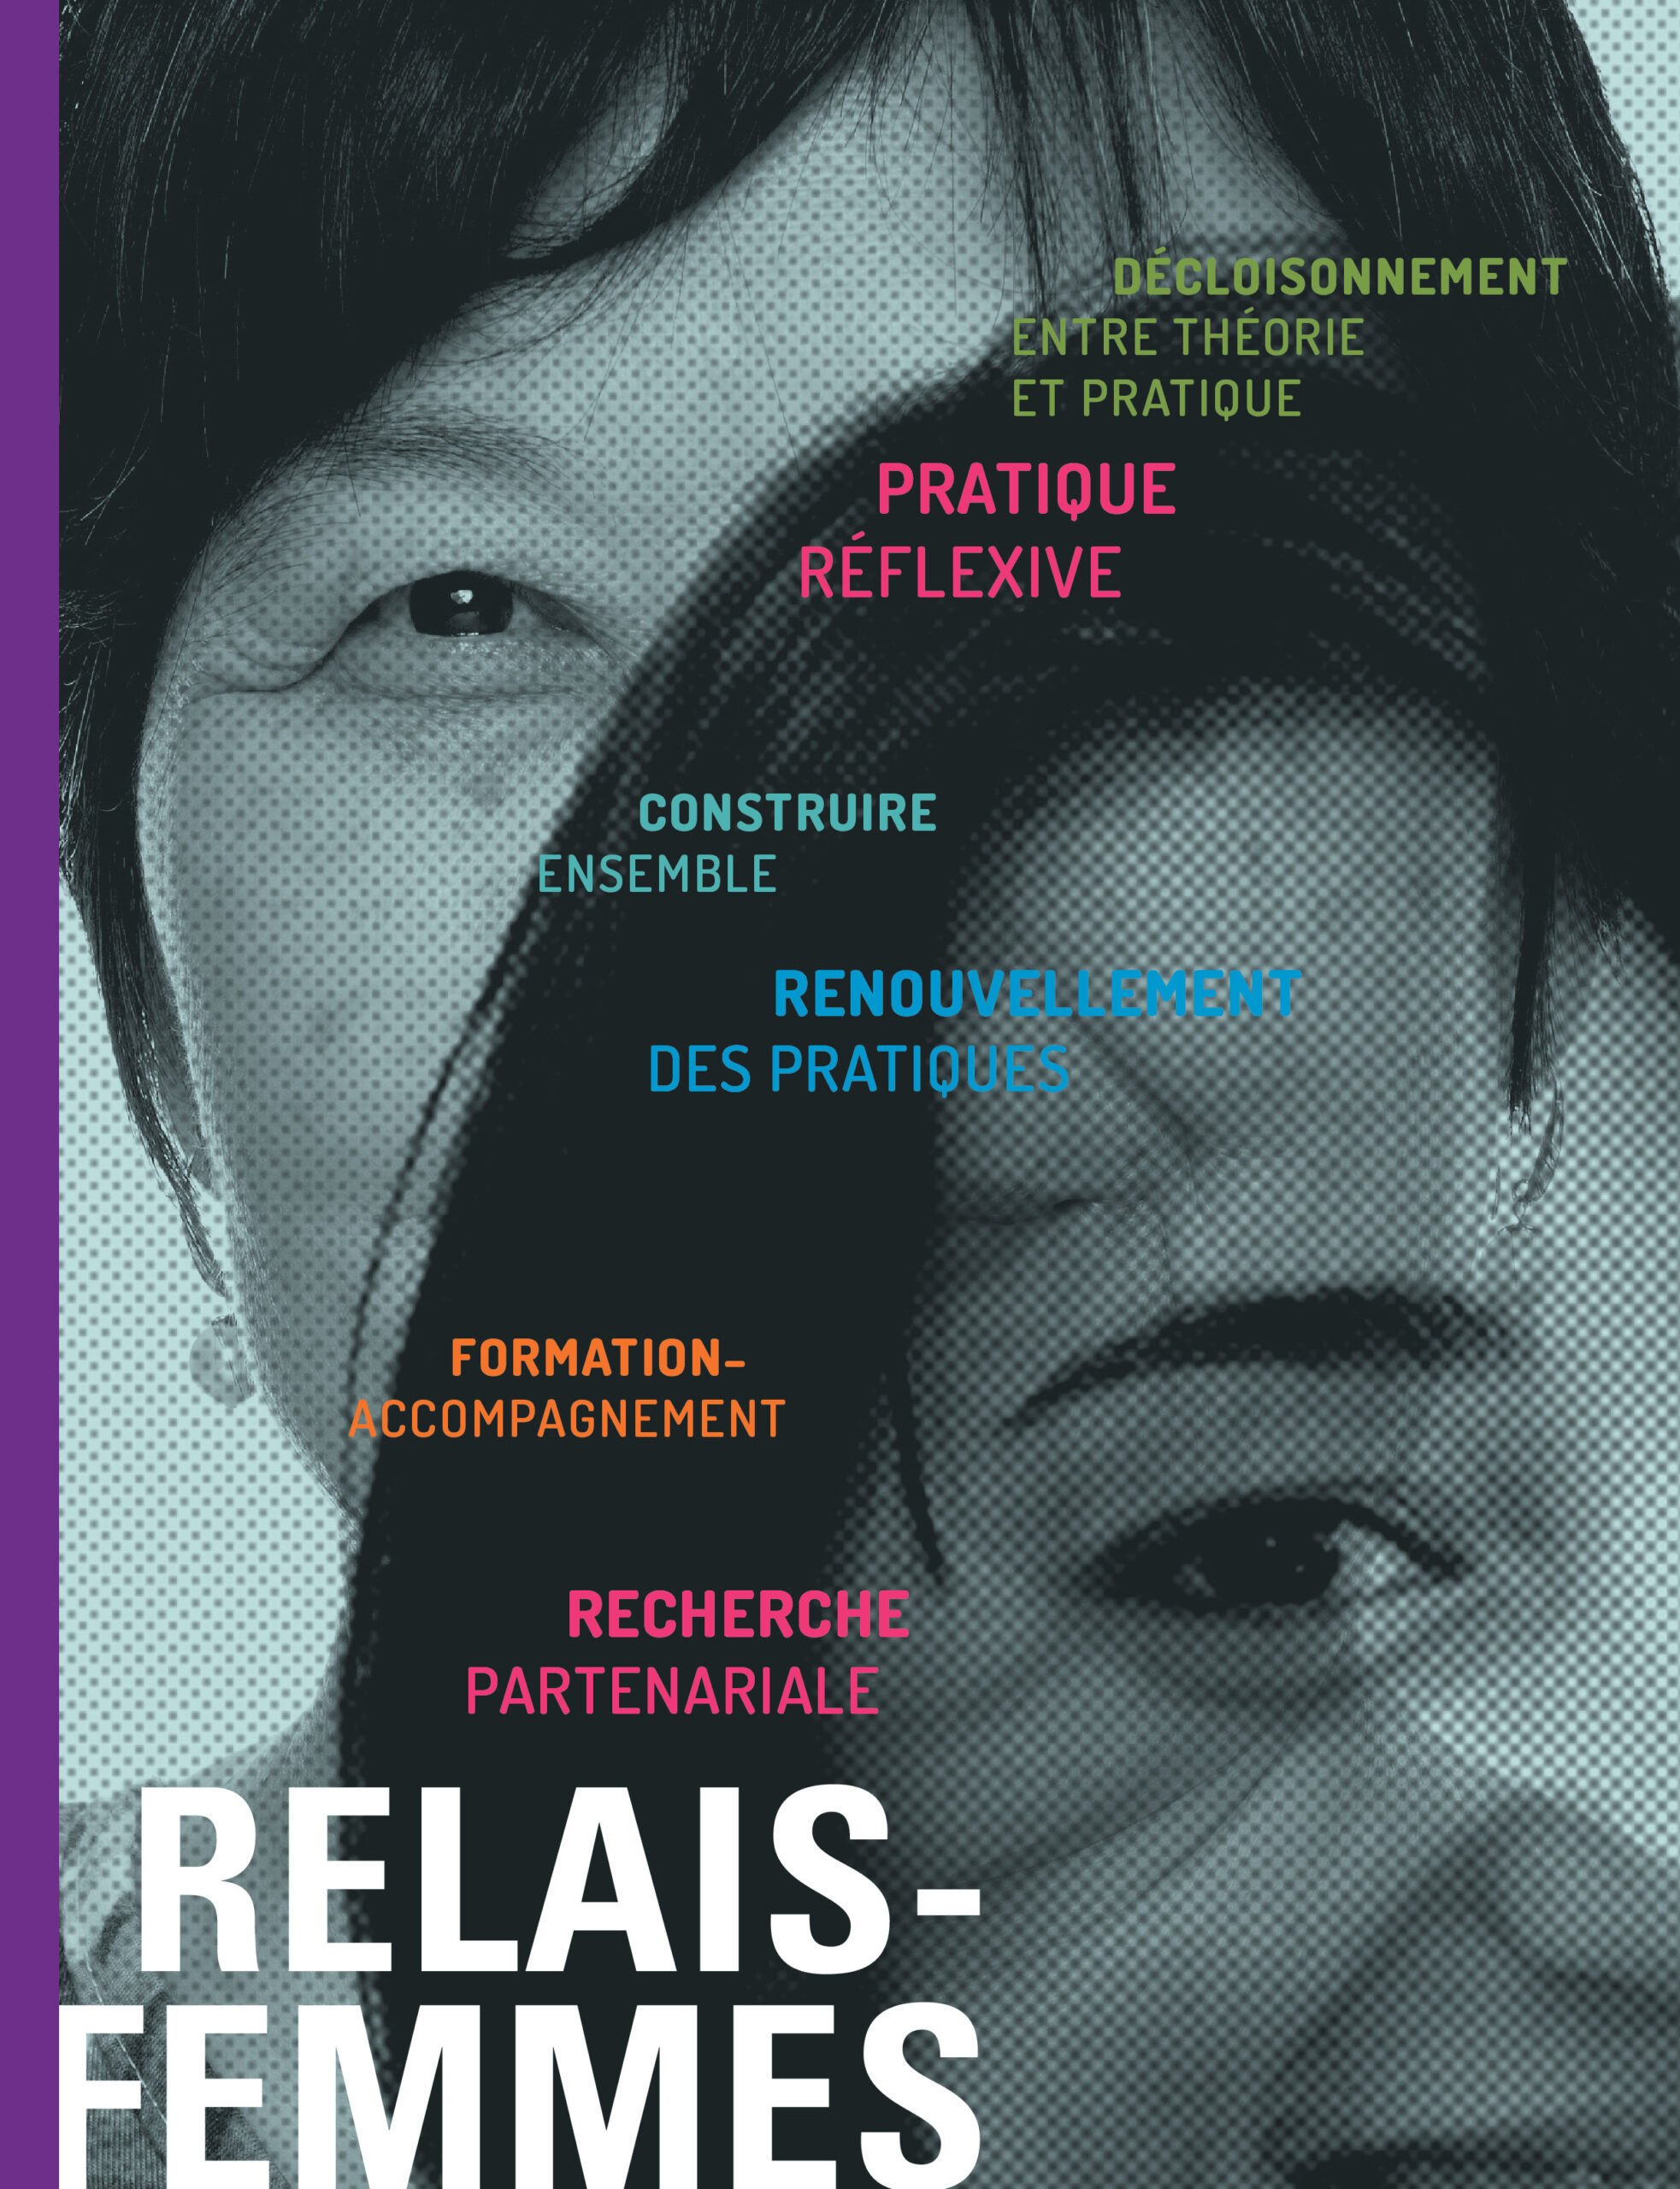 Couverture de publication : Relais-femmes, une mission dynamique de liaison et de transfert de connaissances